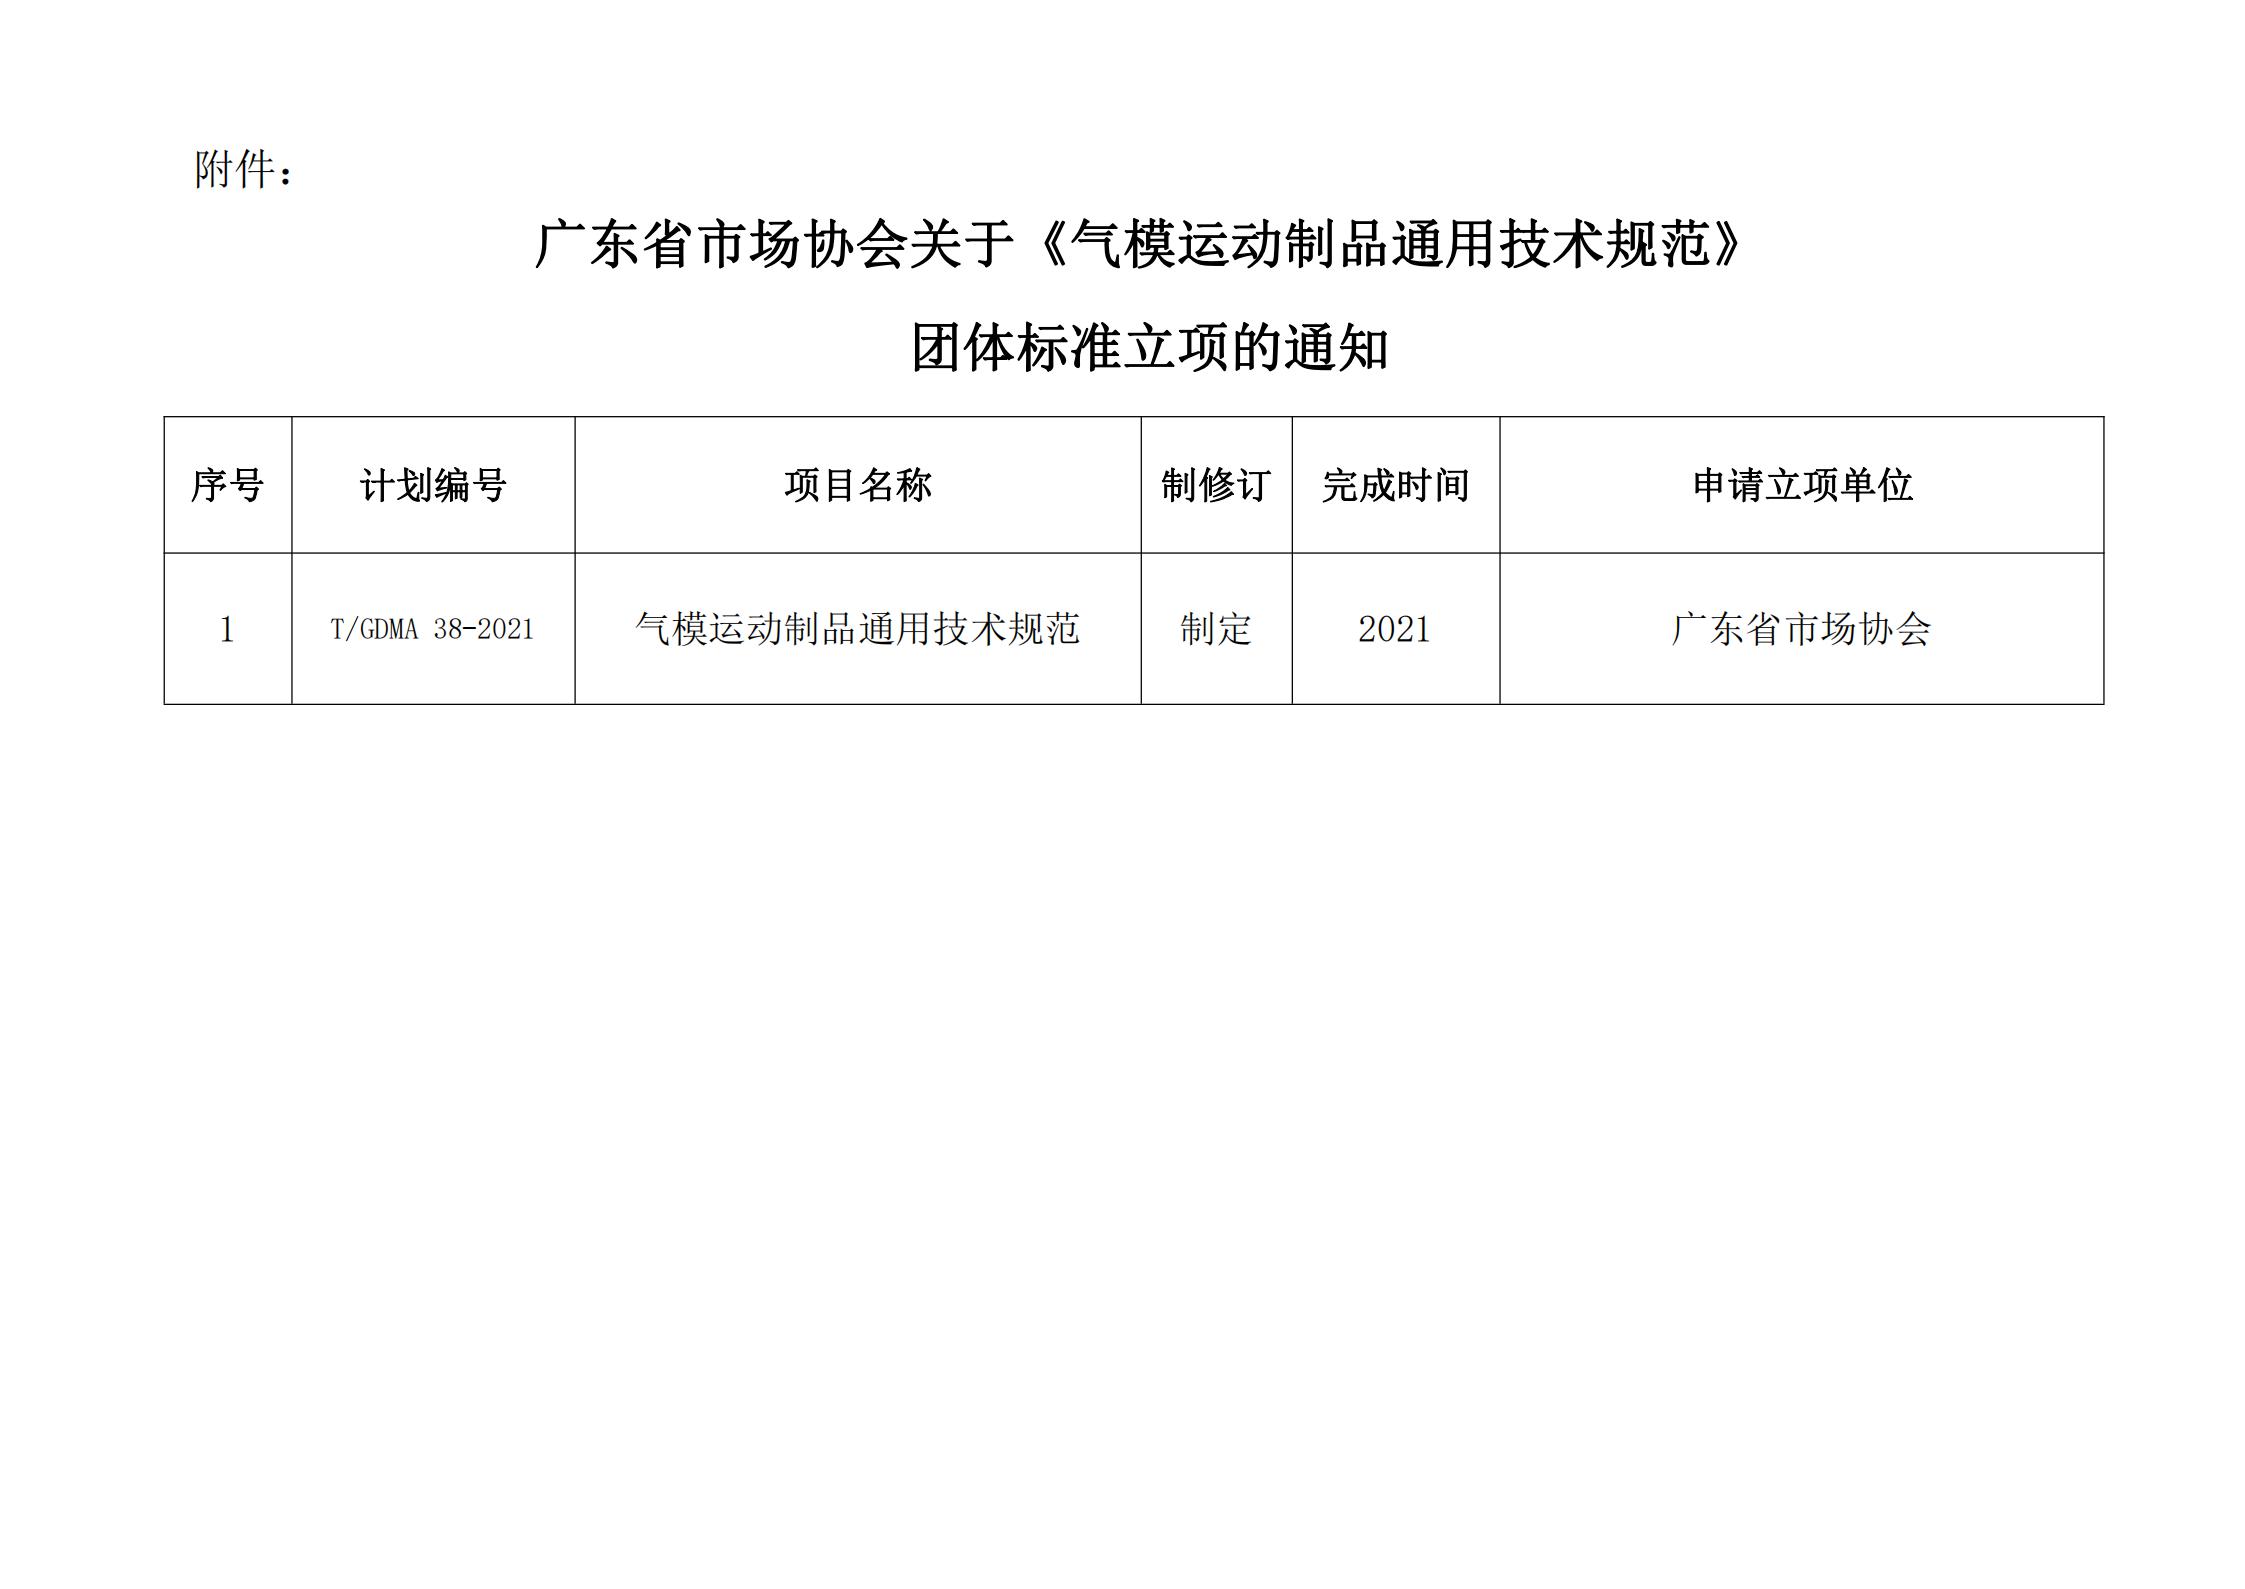 广东省市场协会关于《气模运动制品通用技术规范》团体标准立项的通知20210830 3.jpg